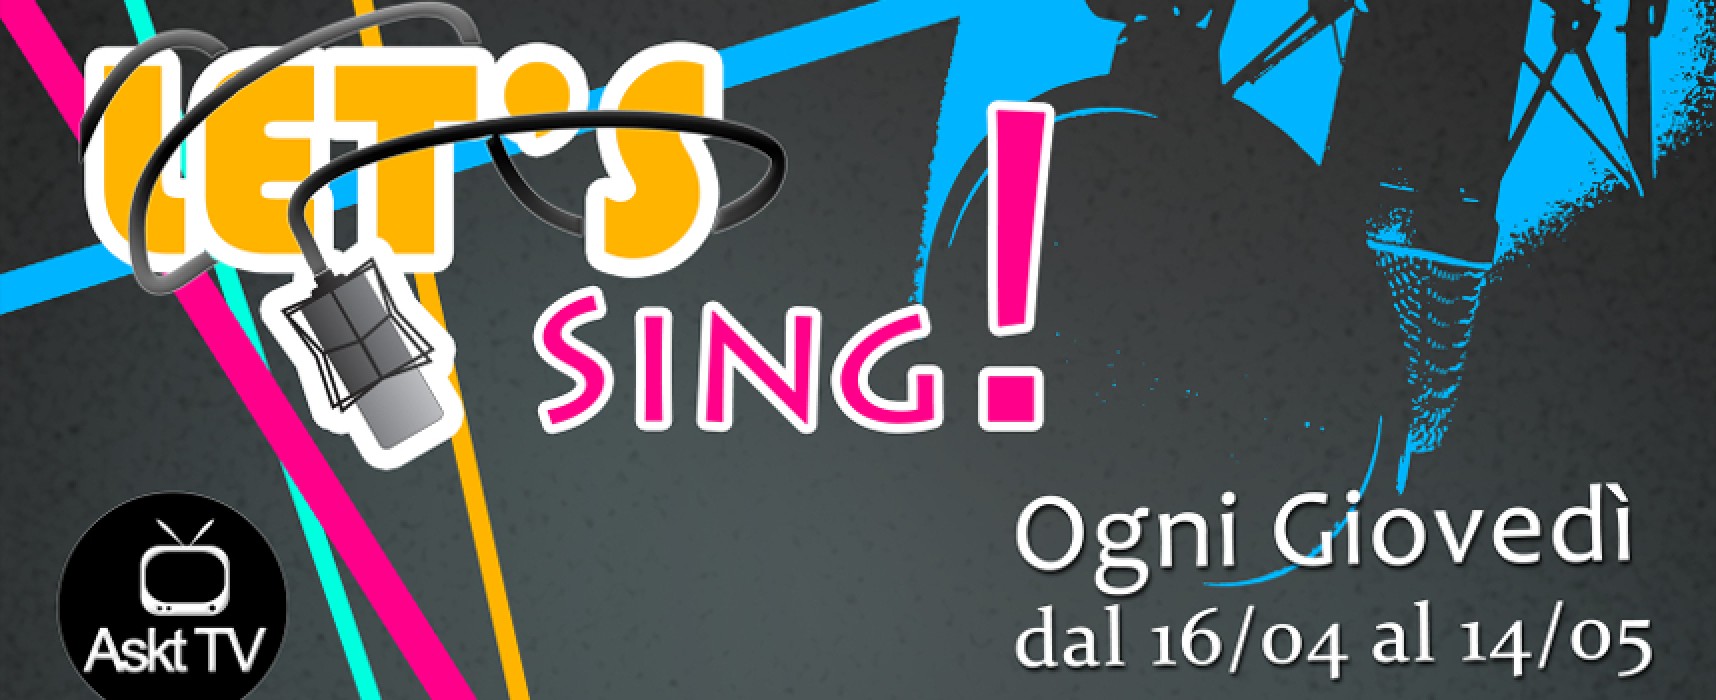 Talent di canto “Let’s Sing!”, mercoledì 25 marzo ultimo giorno per iscriversi alle audizioni